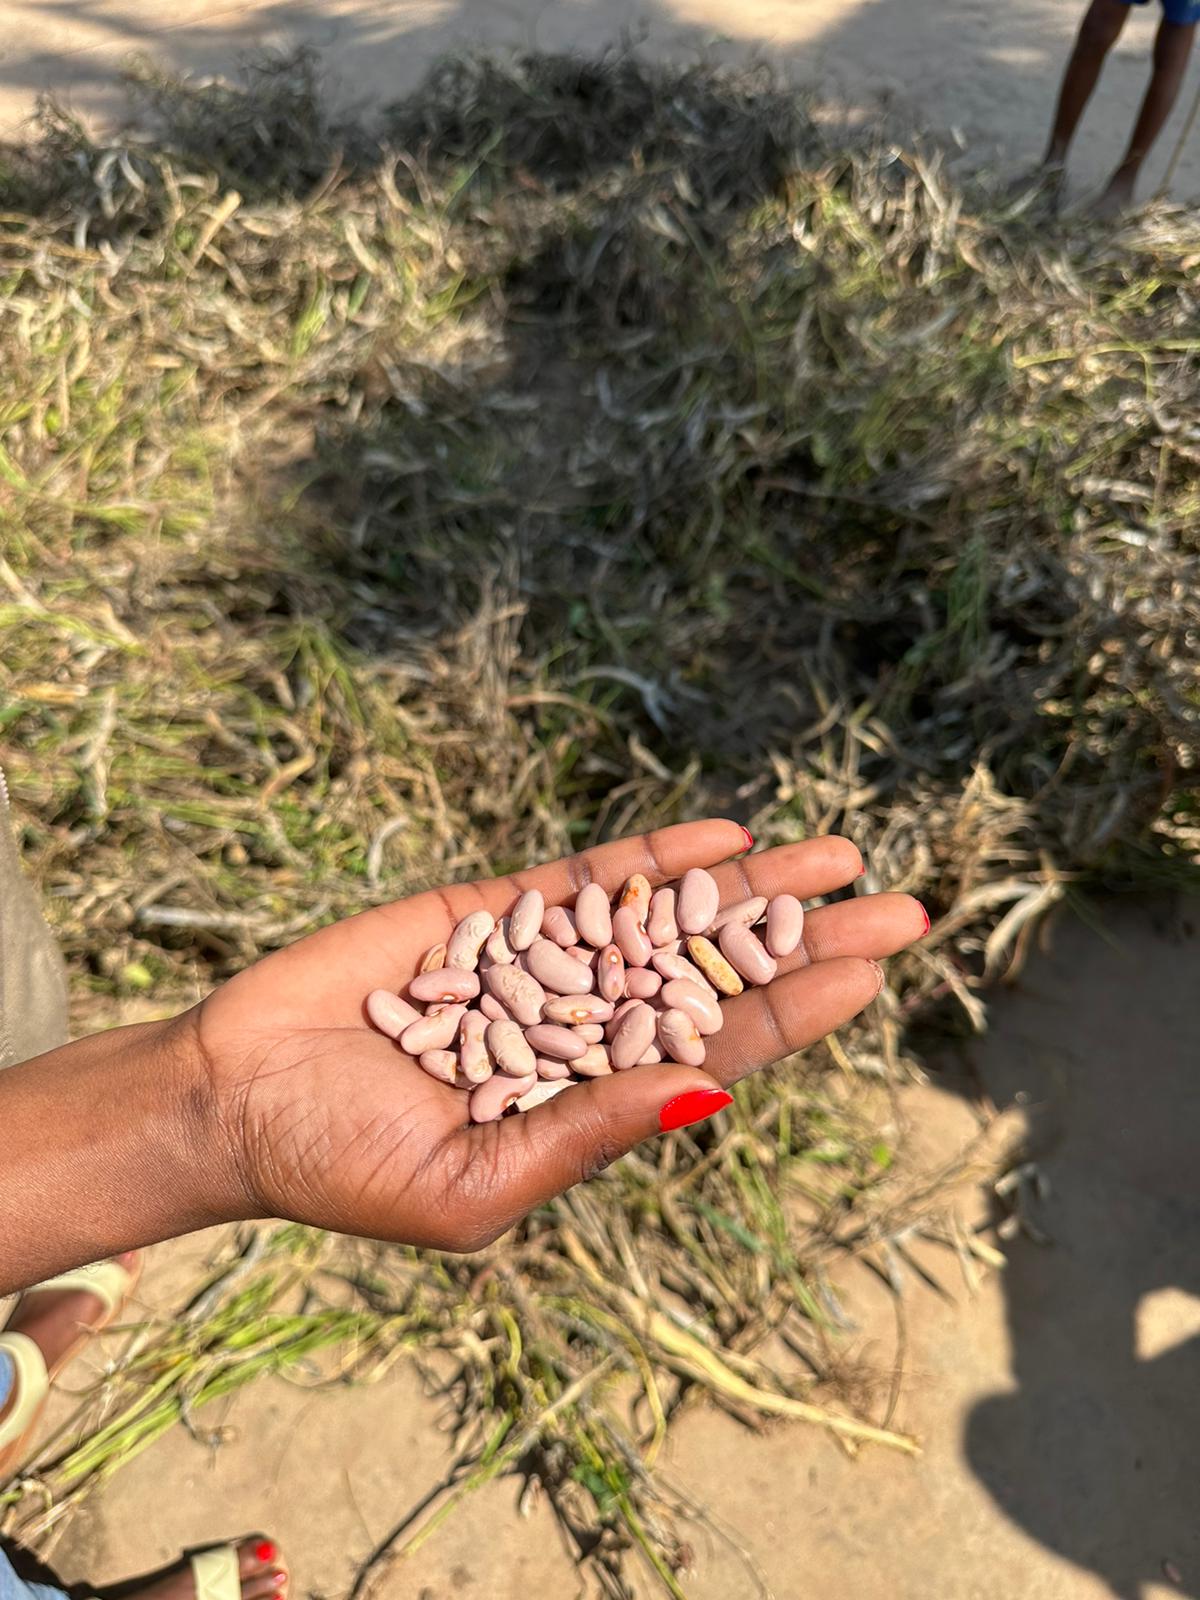 Naast voedsel krijgen Mozambikanen ook zaden om zelf te planten, zoals deze rode bonen. Dit zorgt voor voedselzekerheid op de lange termijn.